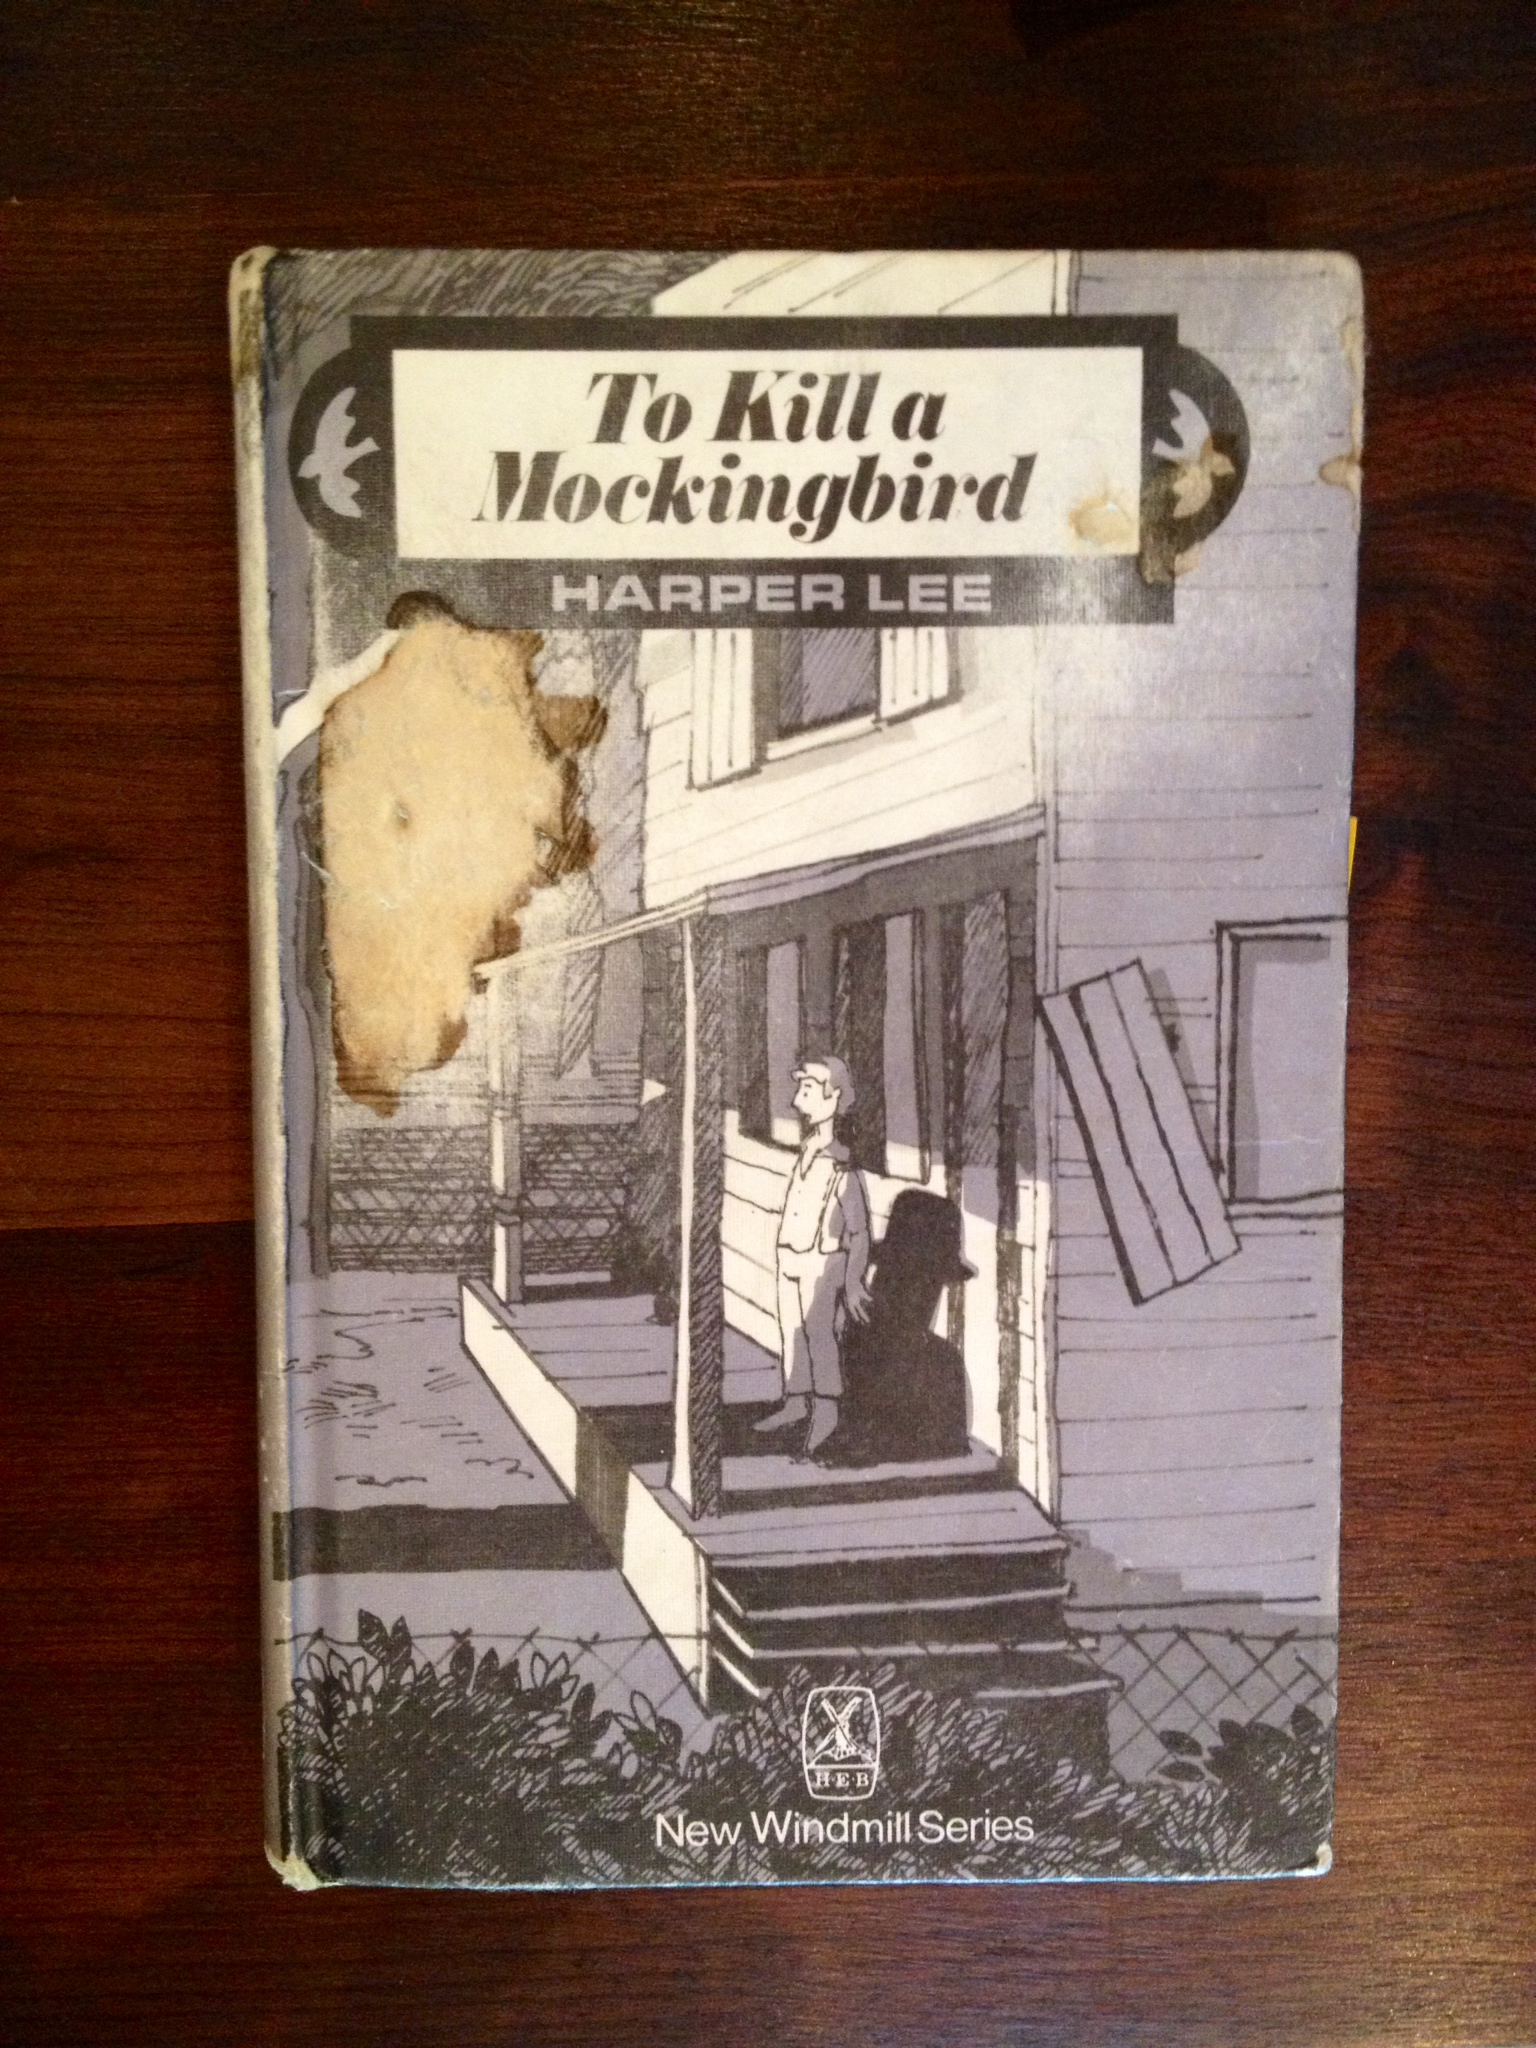 To kill a mockingbird book review essay